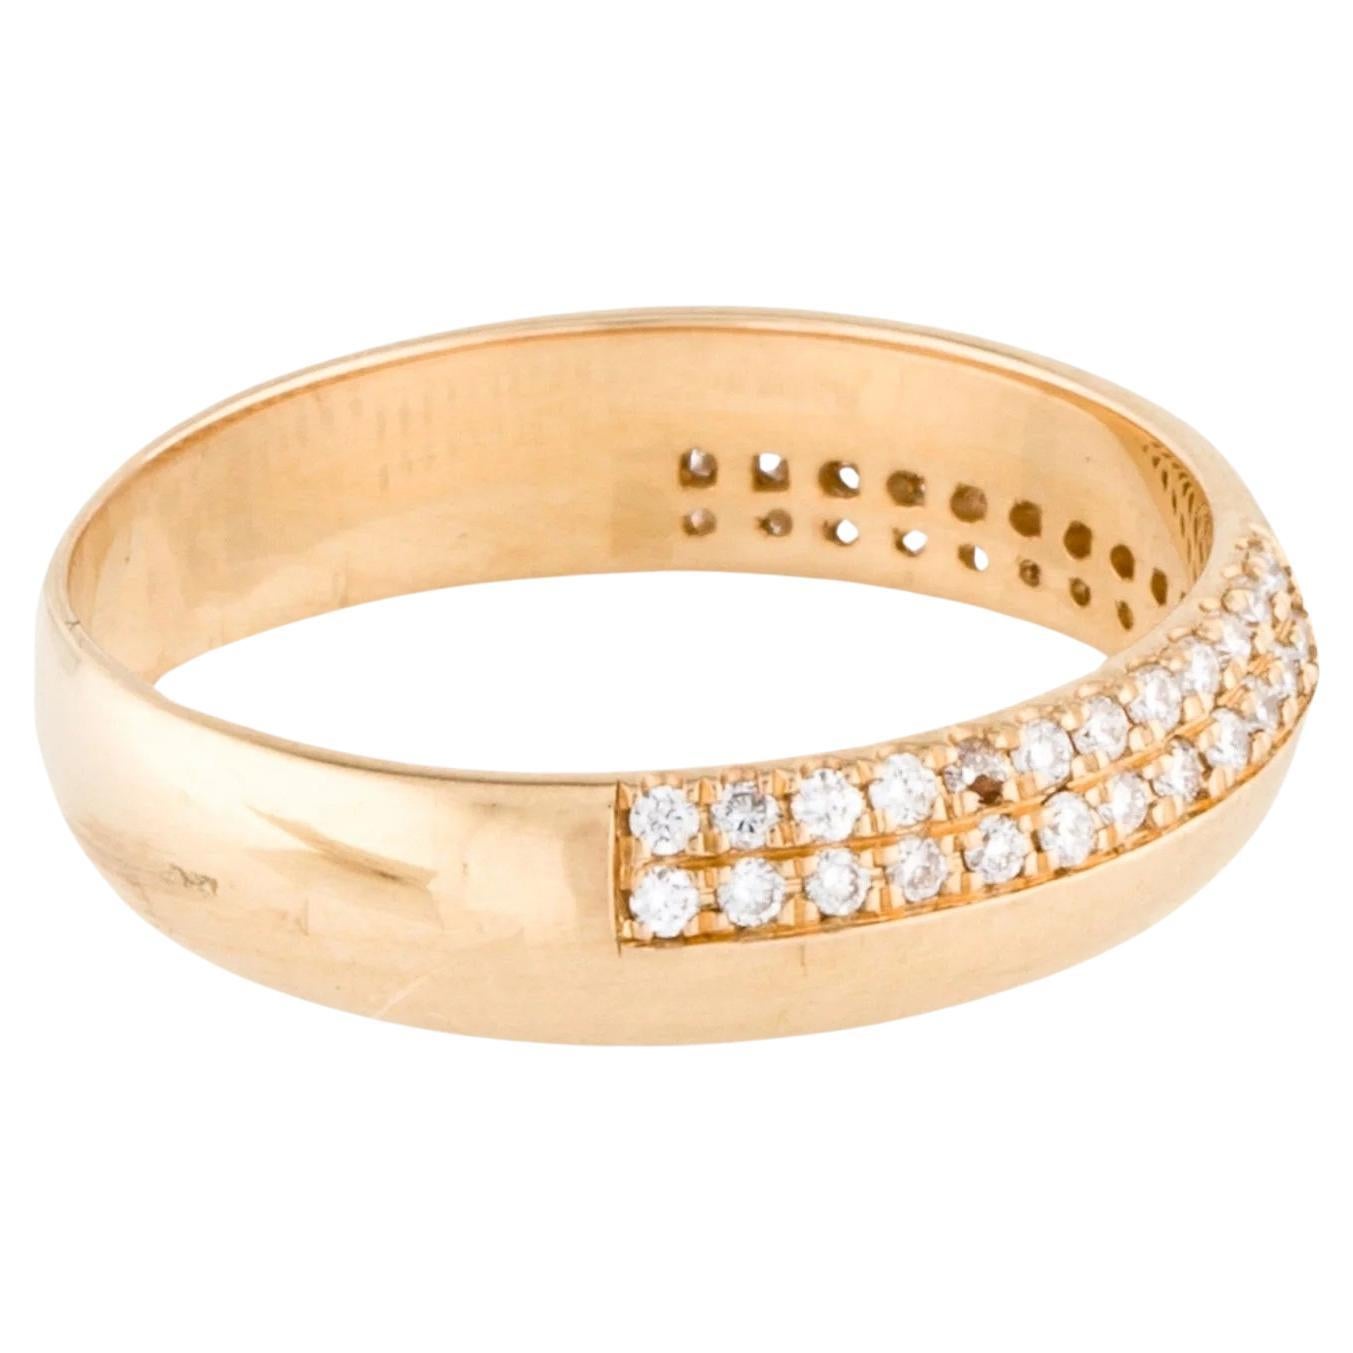 18 Karat Diamantband Größe 6,75  Gelbgold Rund Brillant Edelstein Ring